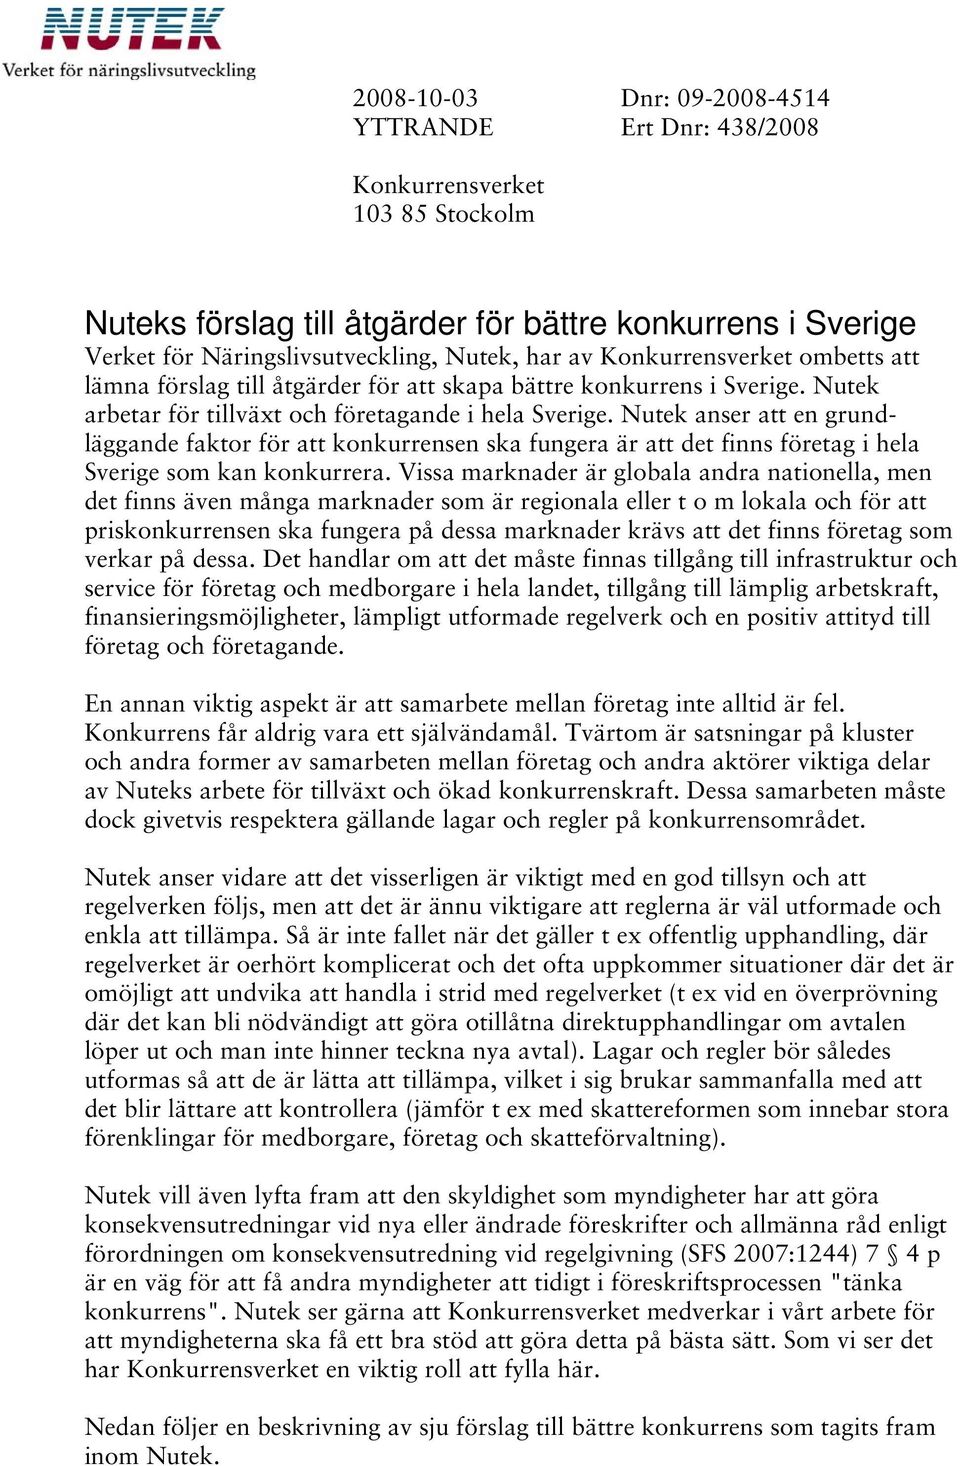 Nutek anser att en grundläggande faktor för att konkurrensen ska fungera är att det finns företag i hela Sverige som kan konkurrera.